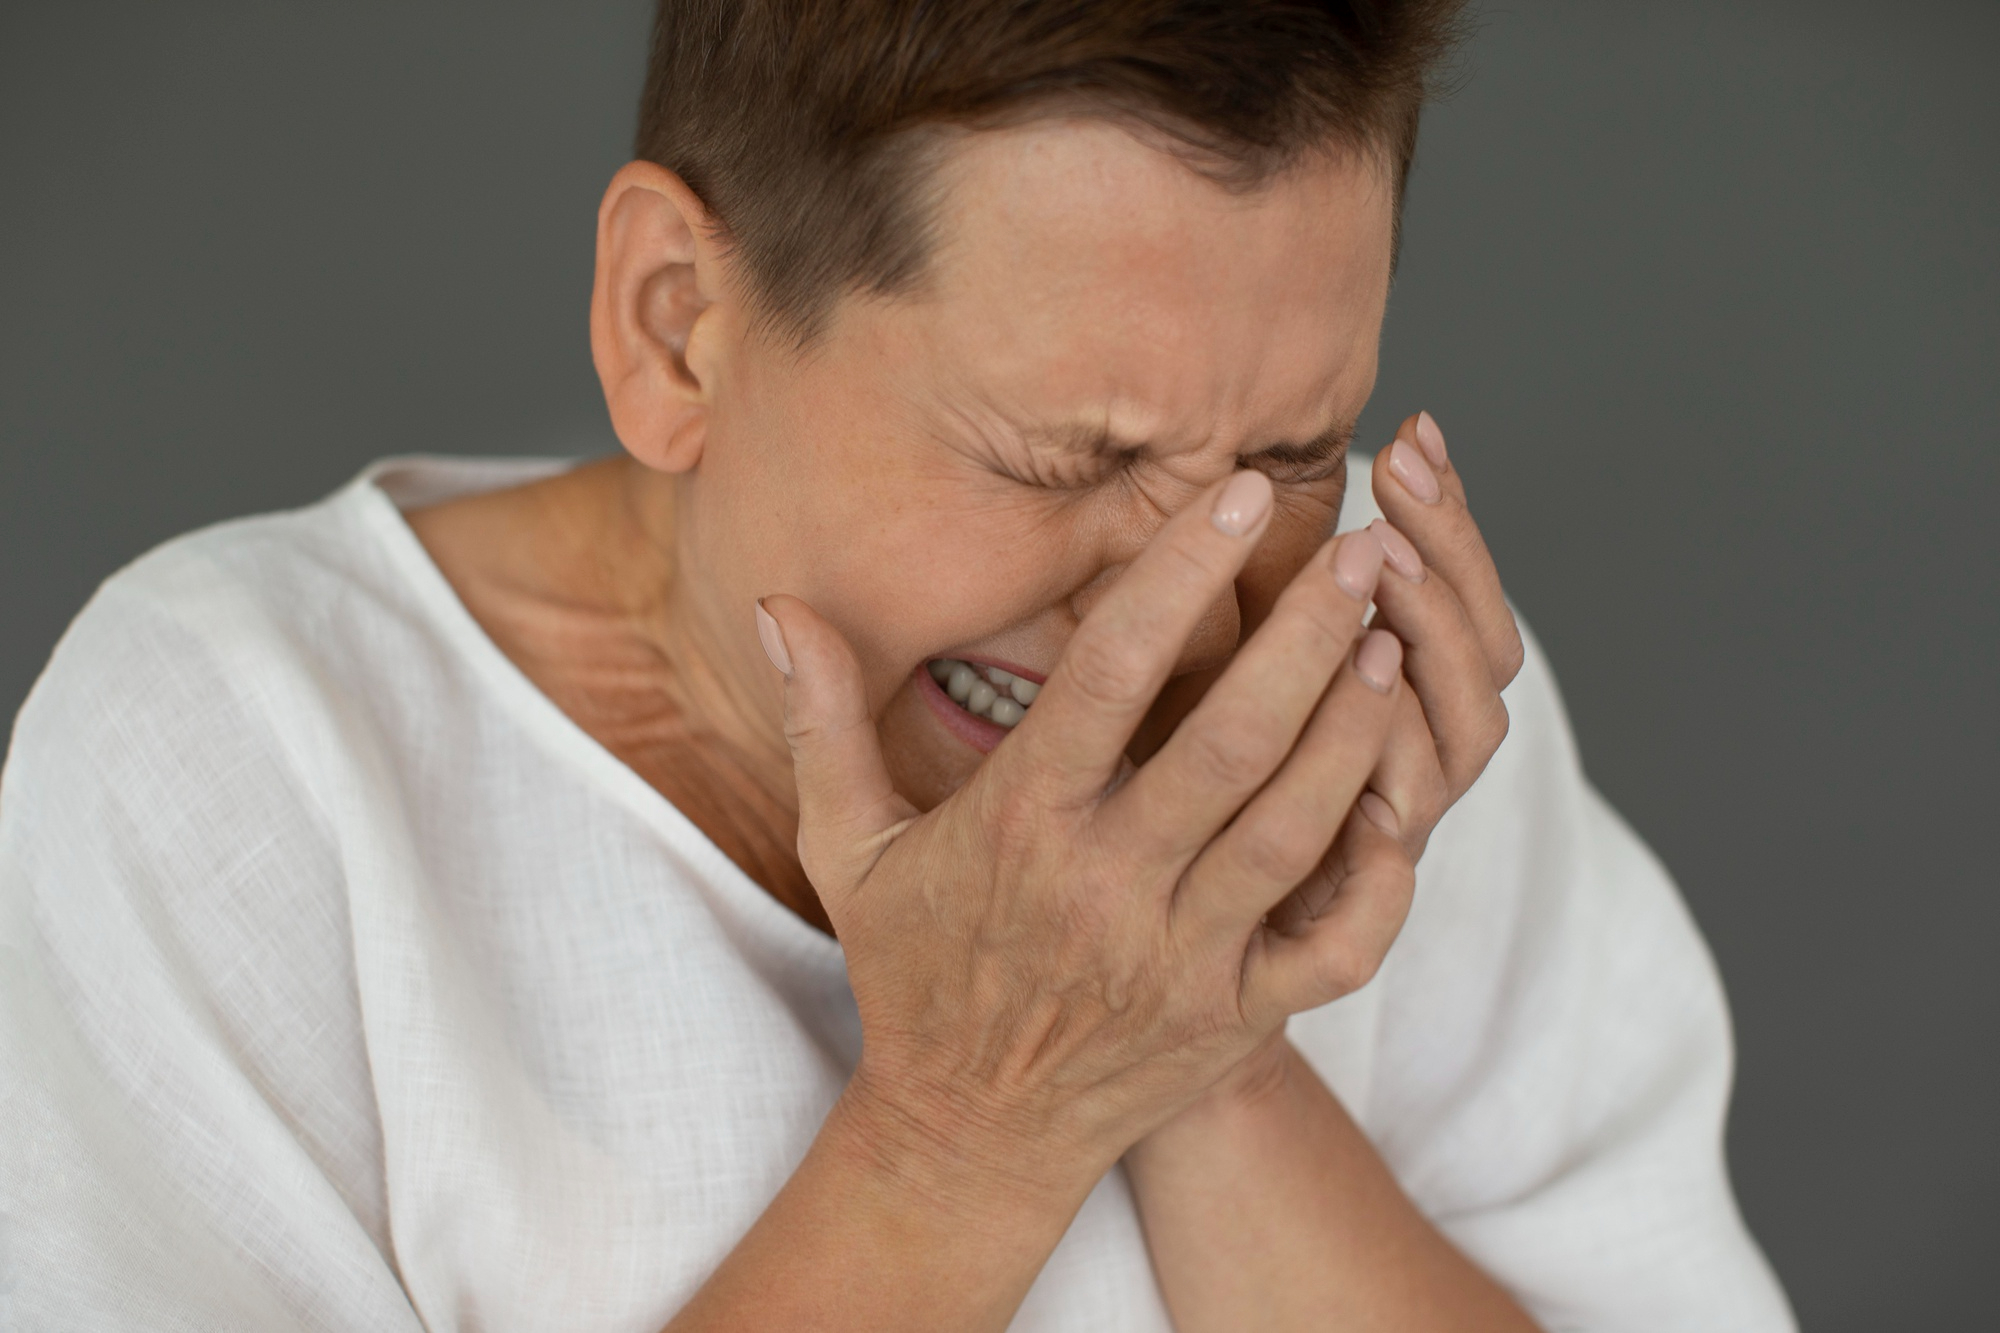 An older woman crying | Source: freepik.com